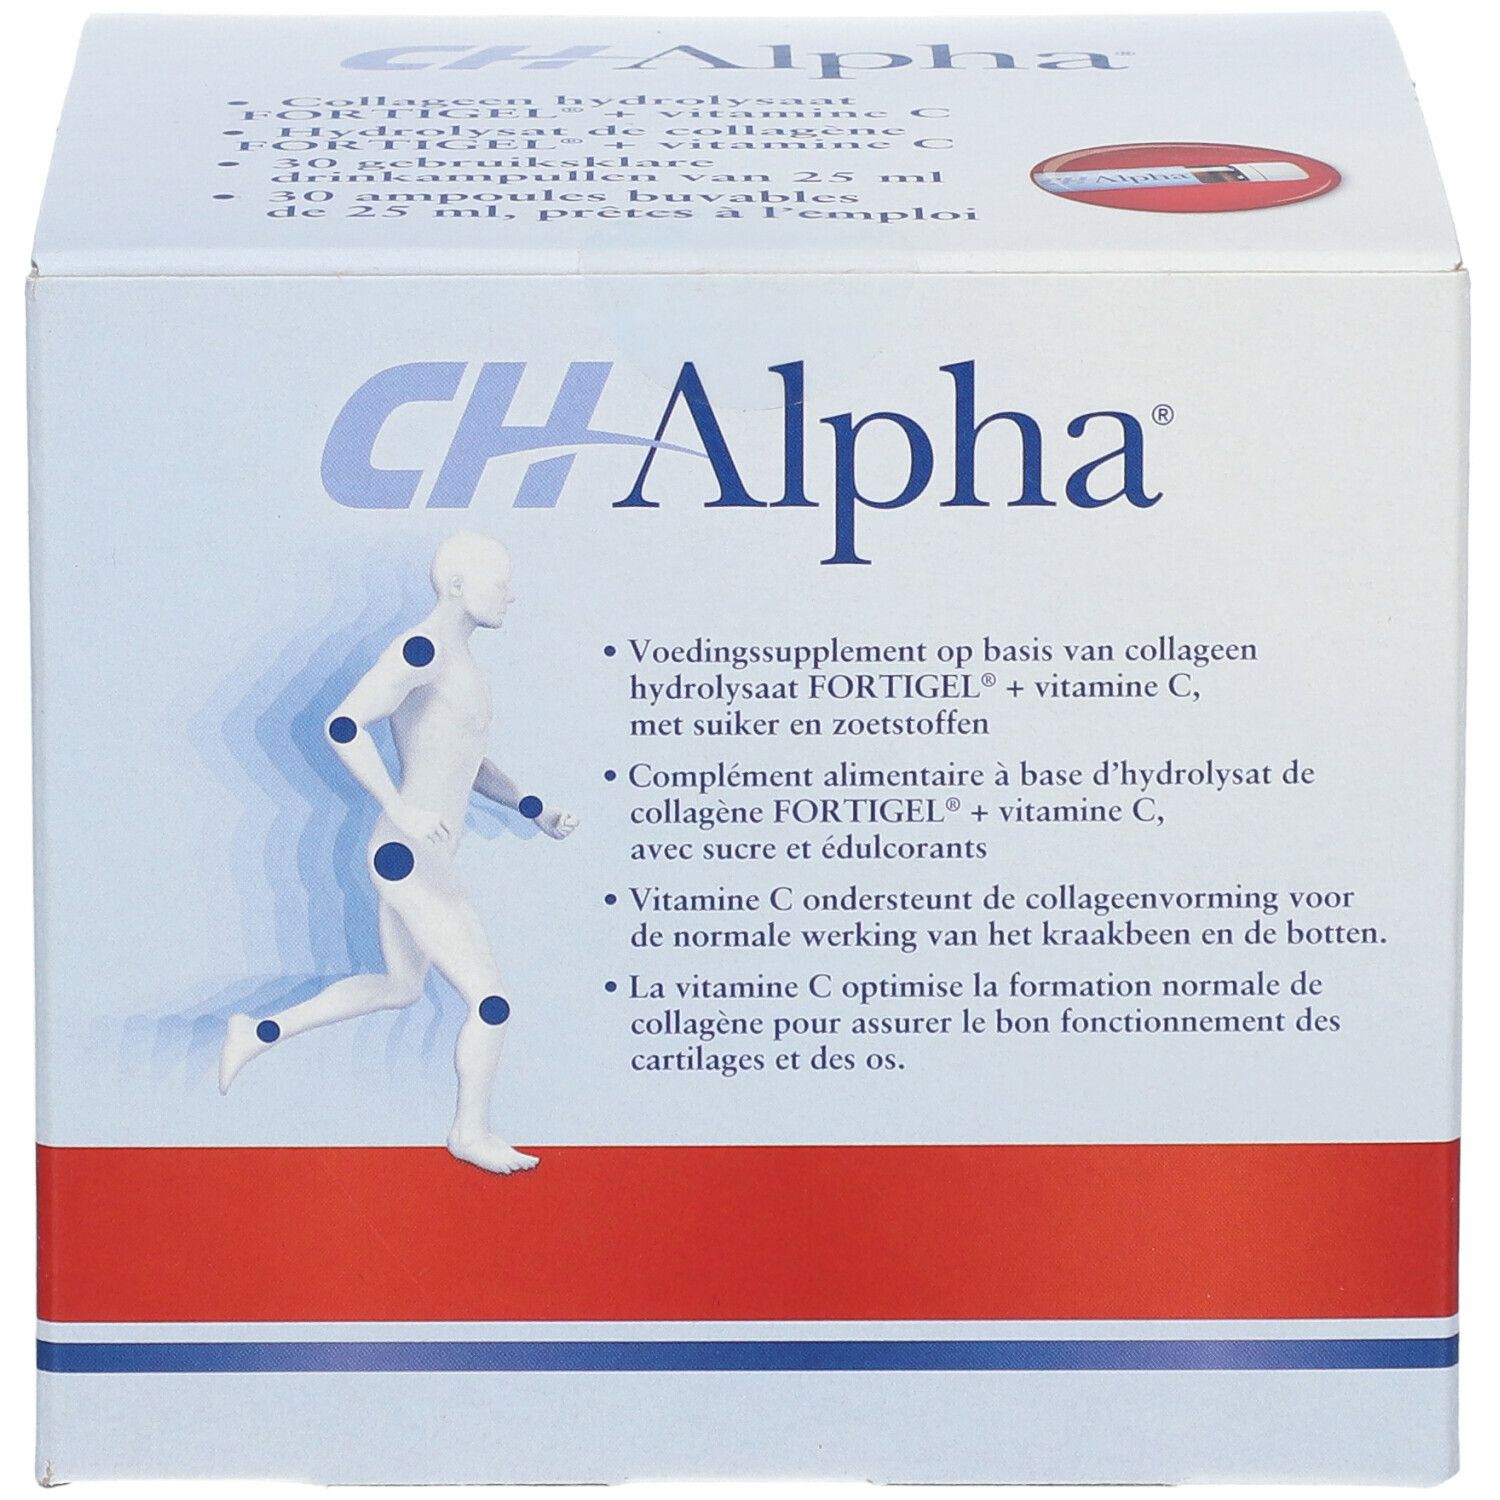 CH-Alpha® Trinkampullen